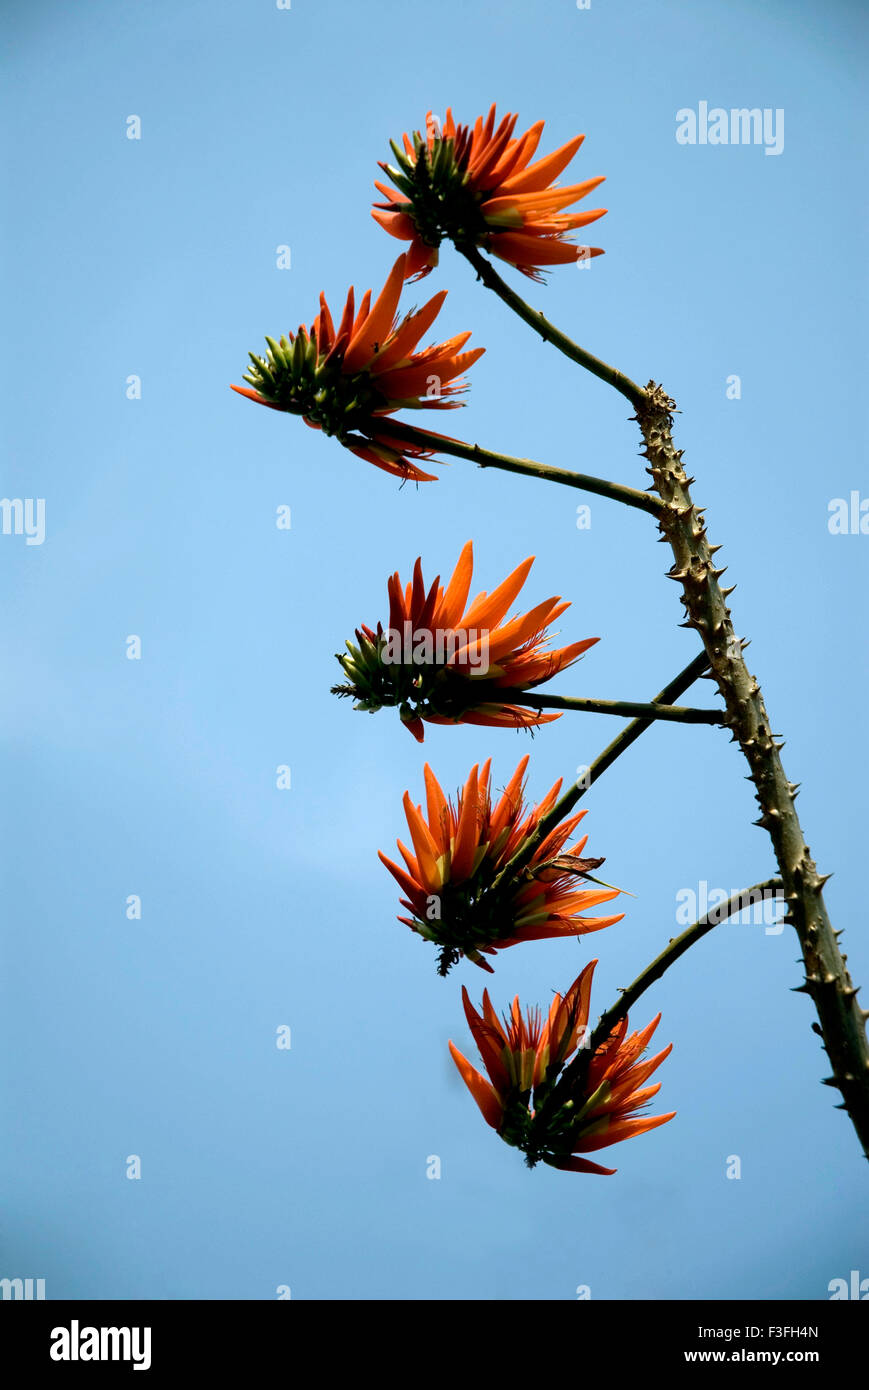 Indian coral tree pangara ; Latin name Erythrina indica Stock Photo